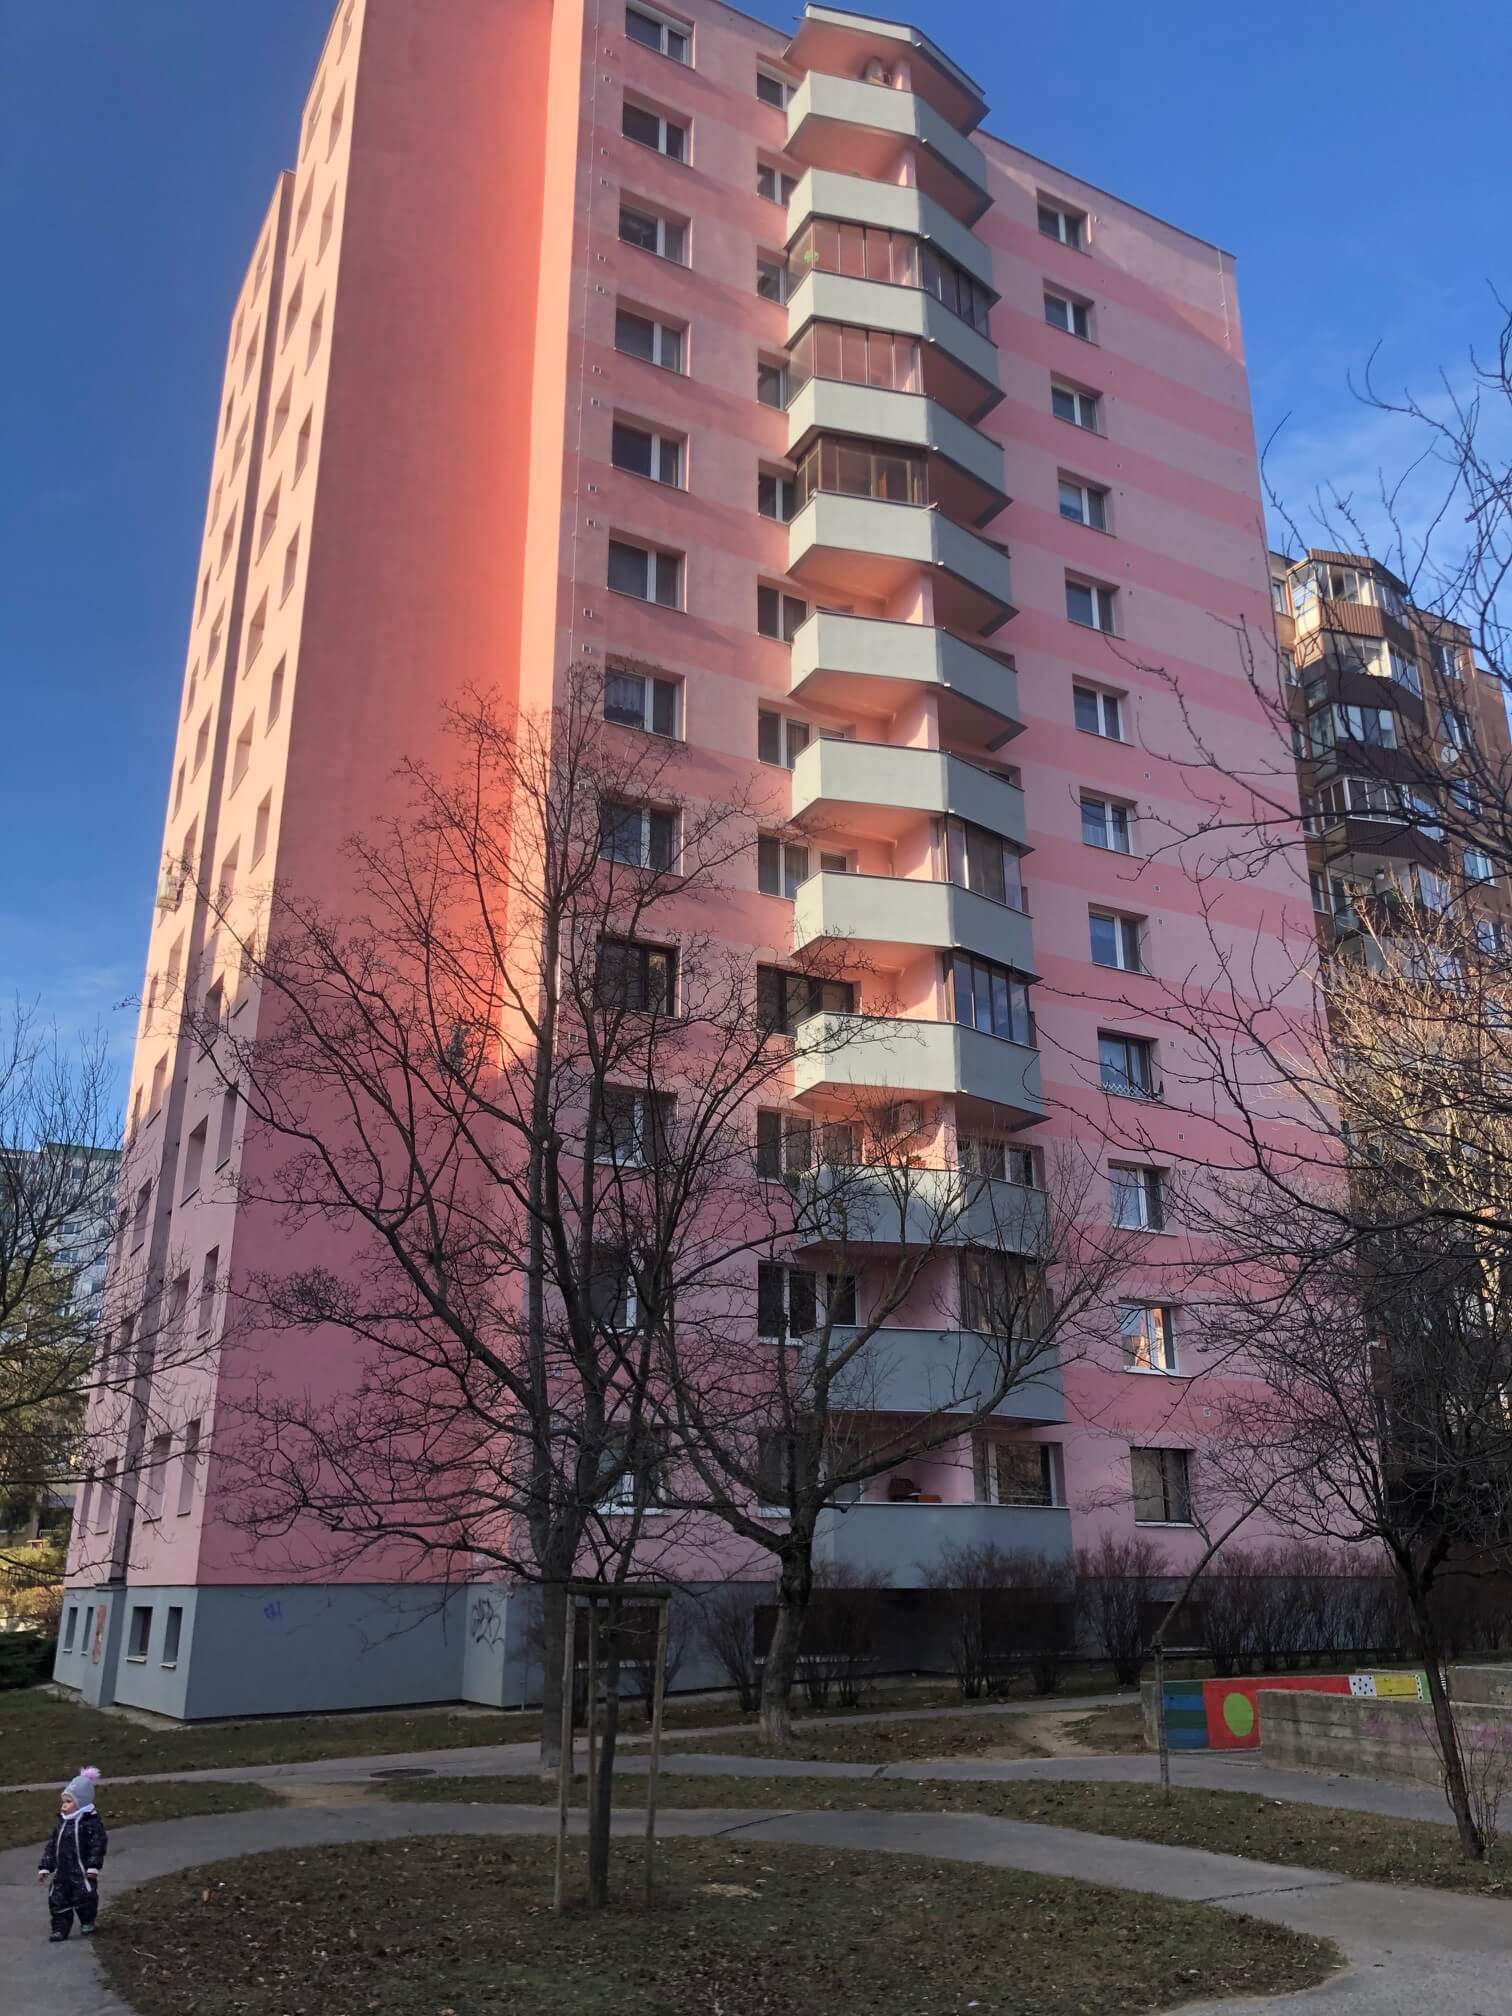 Predané: Exkluzívne na predaj 3 izbový byt, Devínska Nová Ves, Jána Poničana 3, 65m2, balkon 4m2,klimatizácia-9